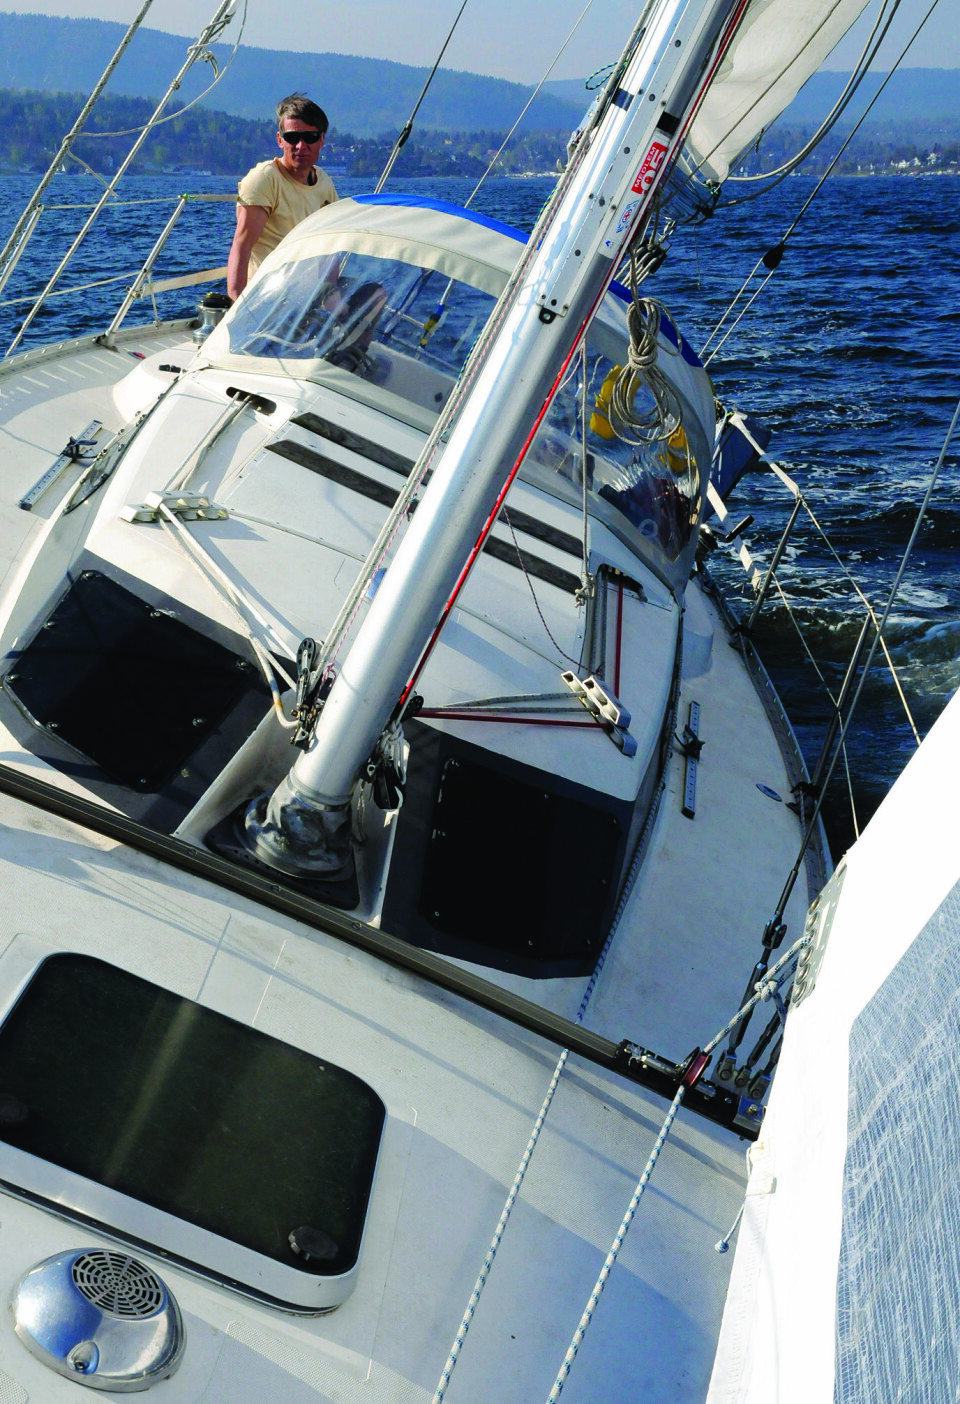 KRYSS: Selvslående fokk gjør seilhåndteringen enkel. Systemet gjør båten egnet for soloseiling.